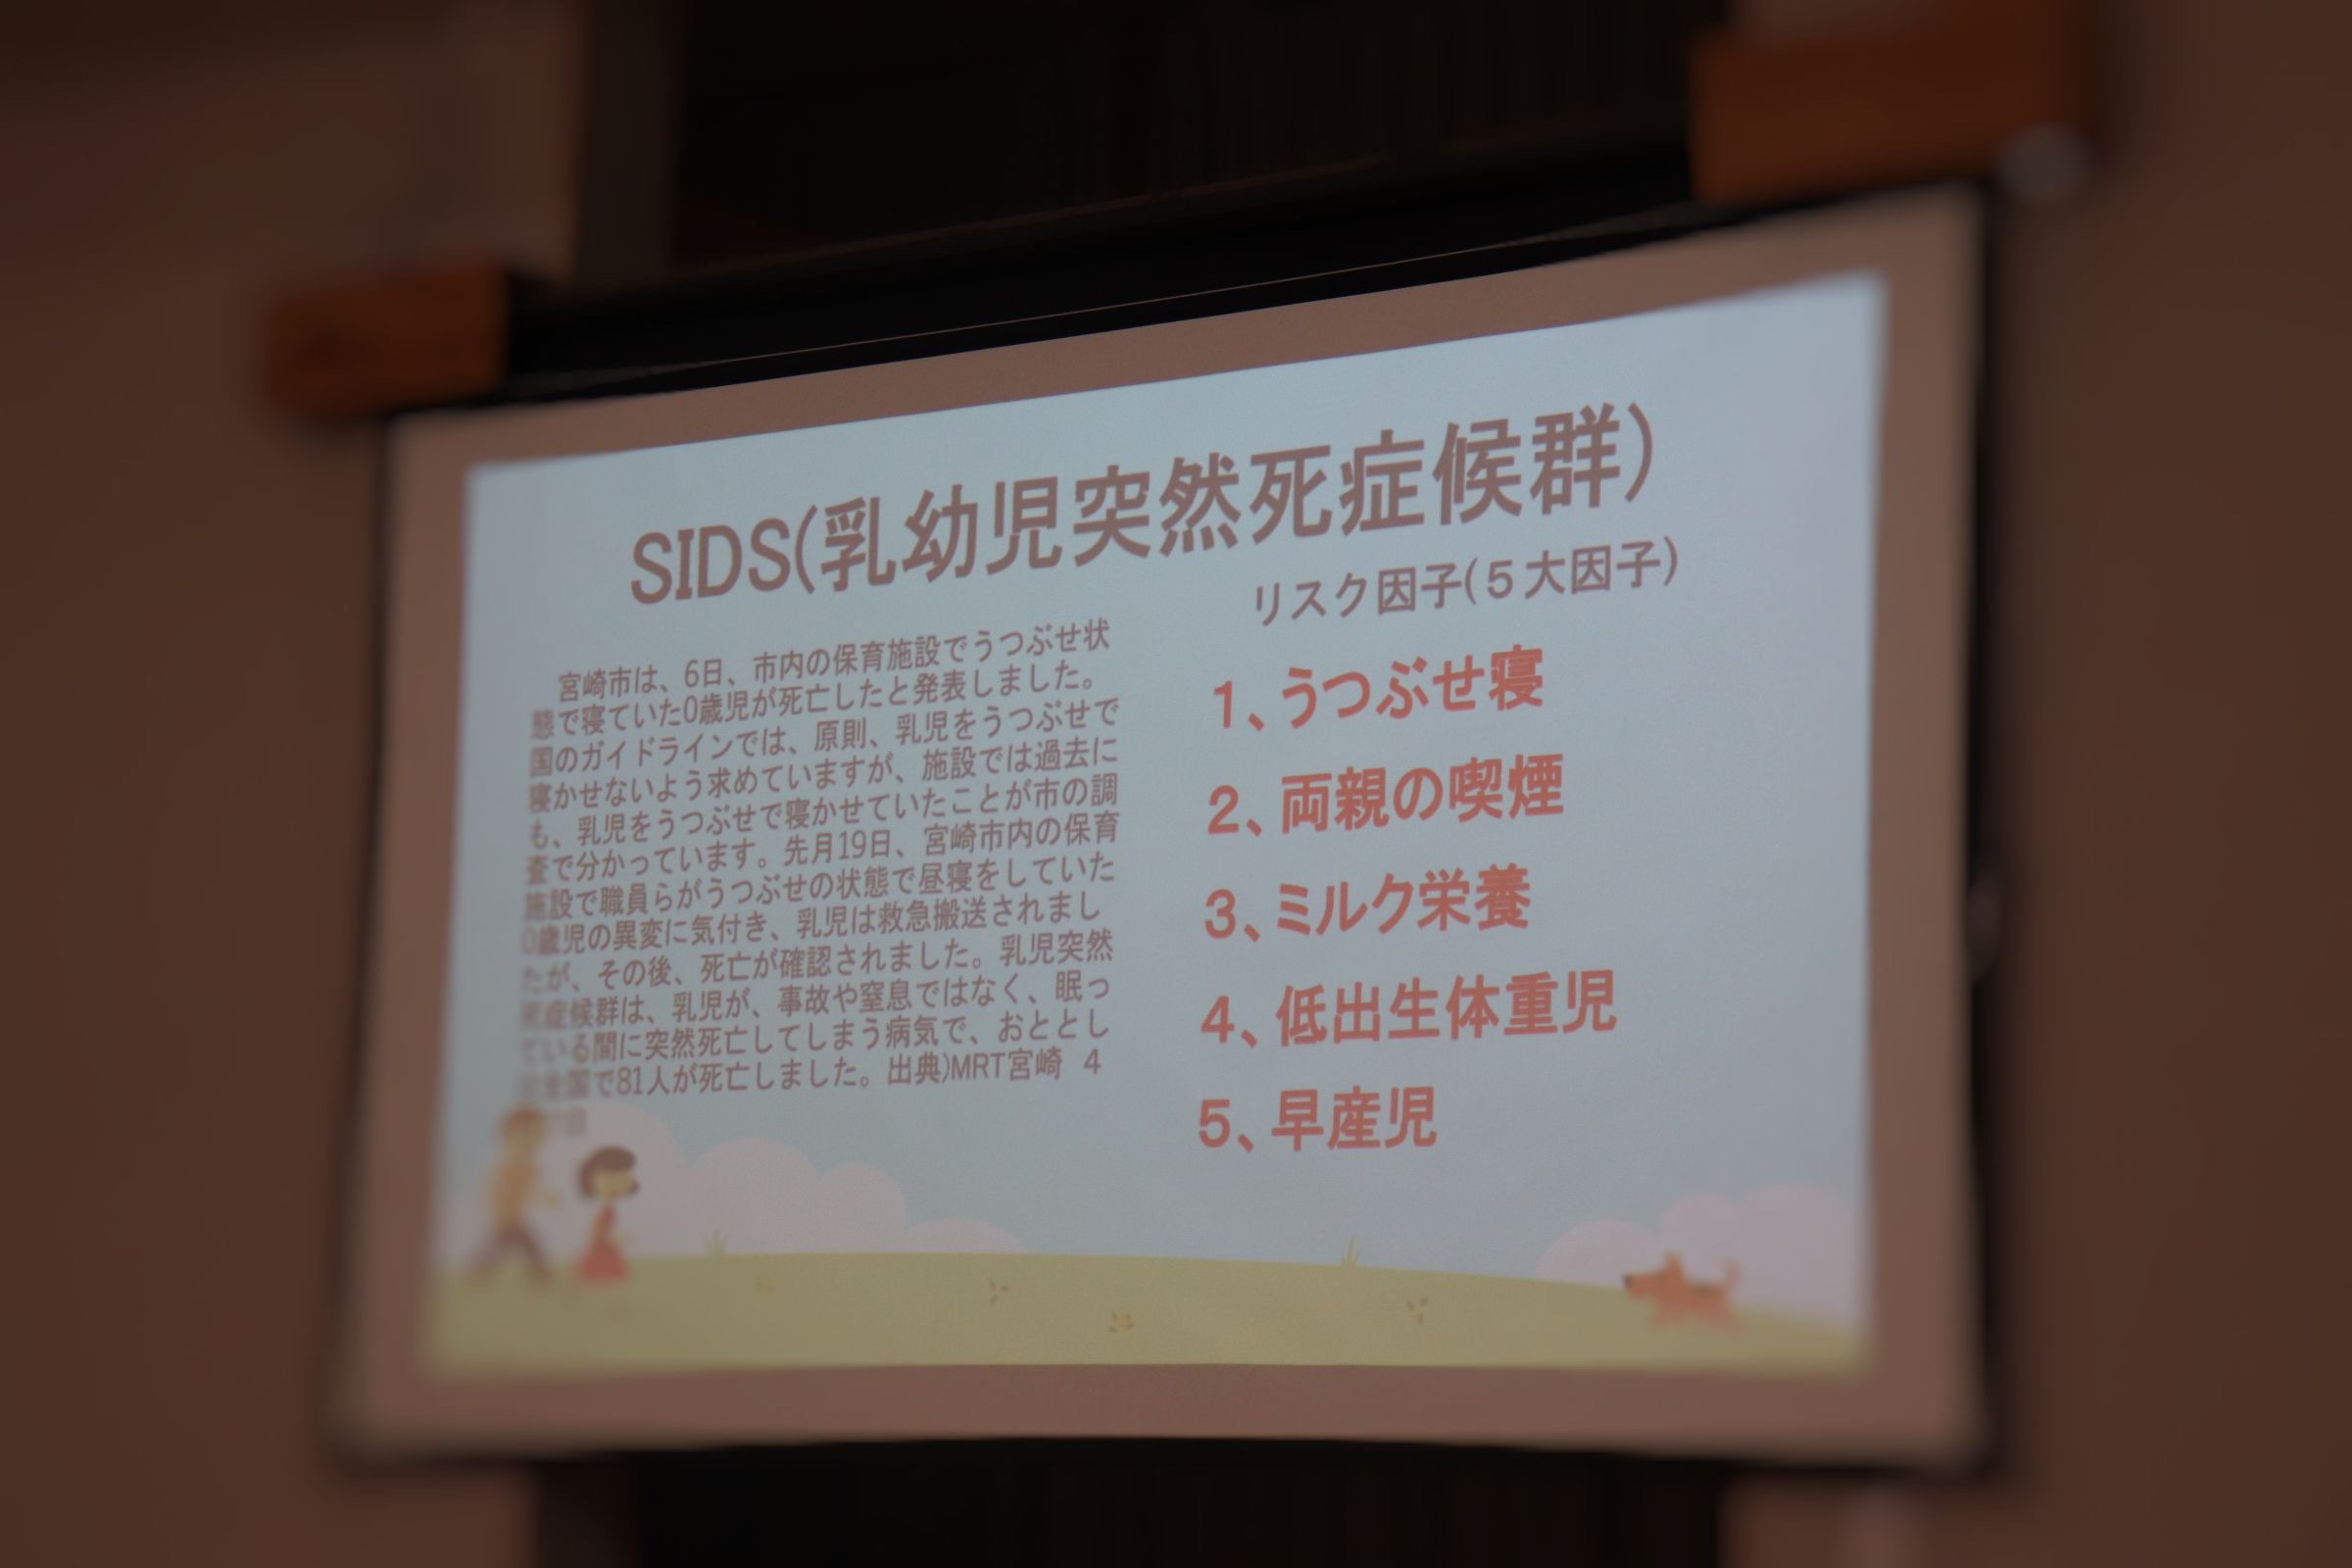 SIDSについてのスライド